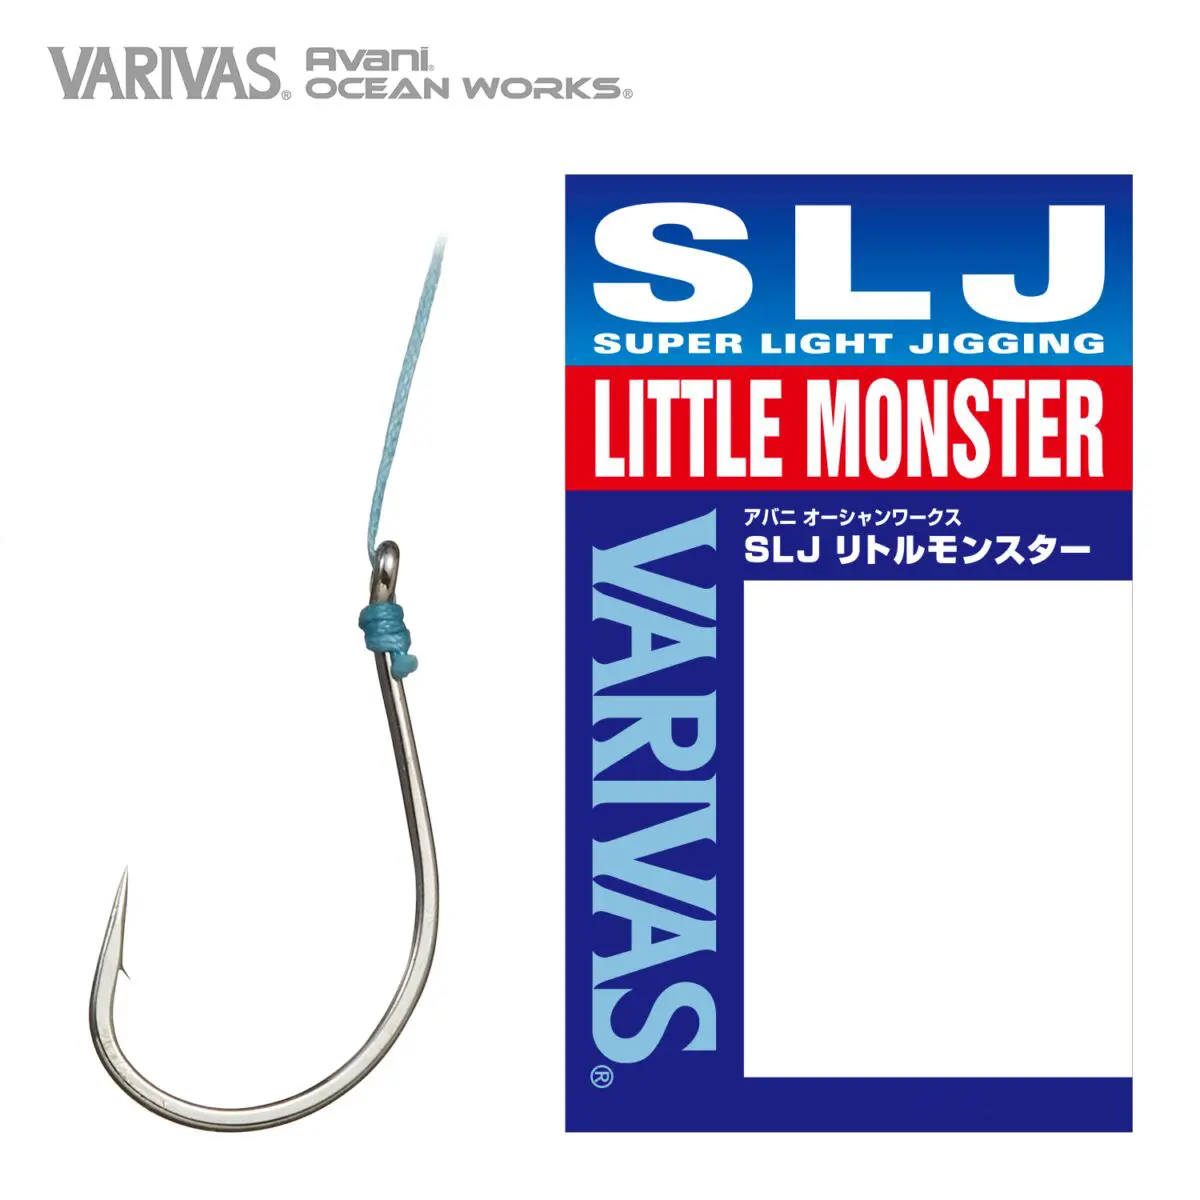 Avani Ocean Works SLJ Little Monster Hook – VARIVAS